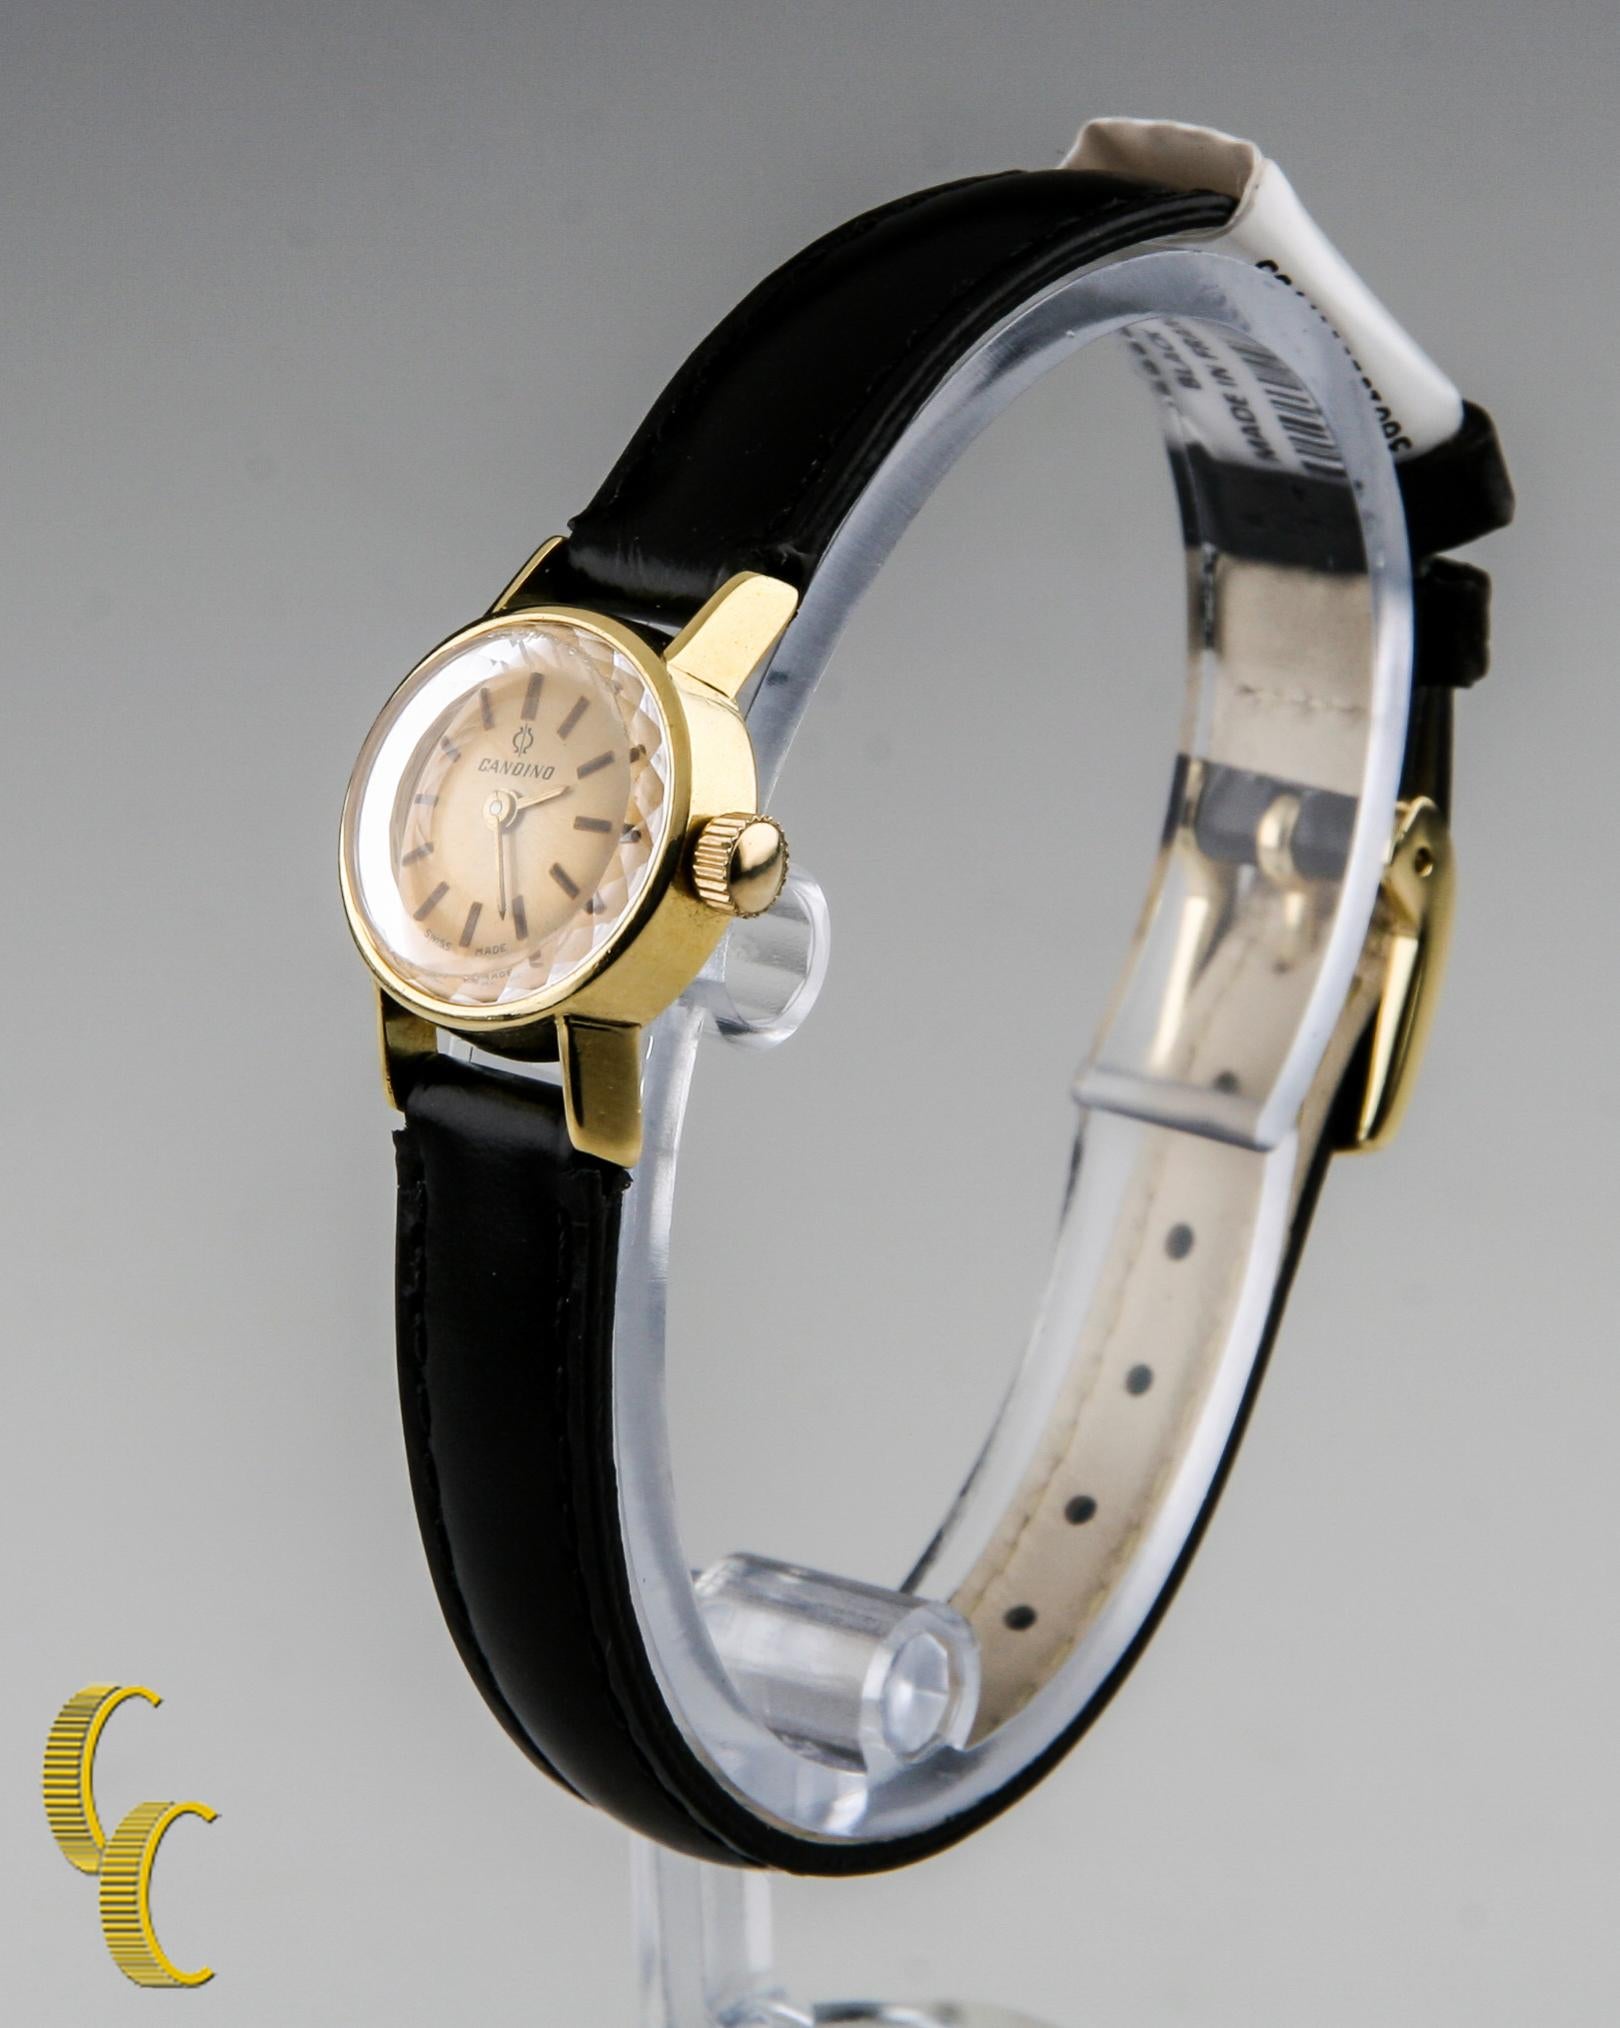 candino 2000 watch price